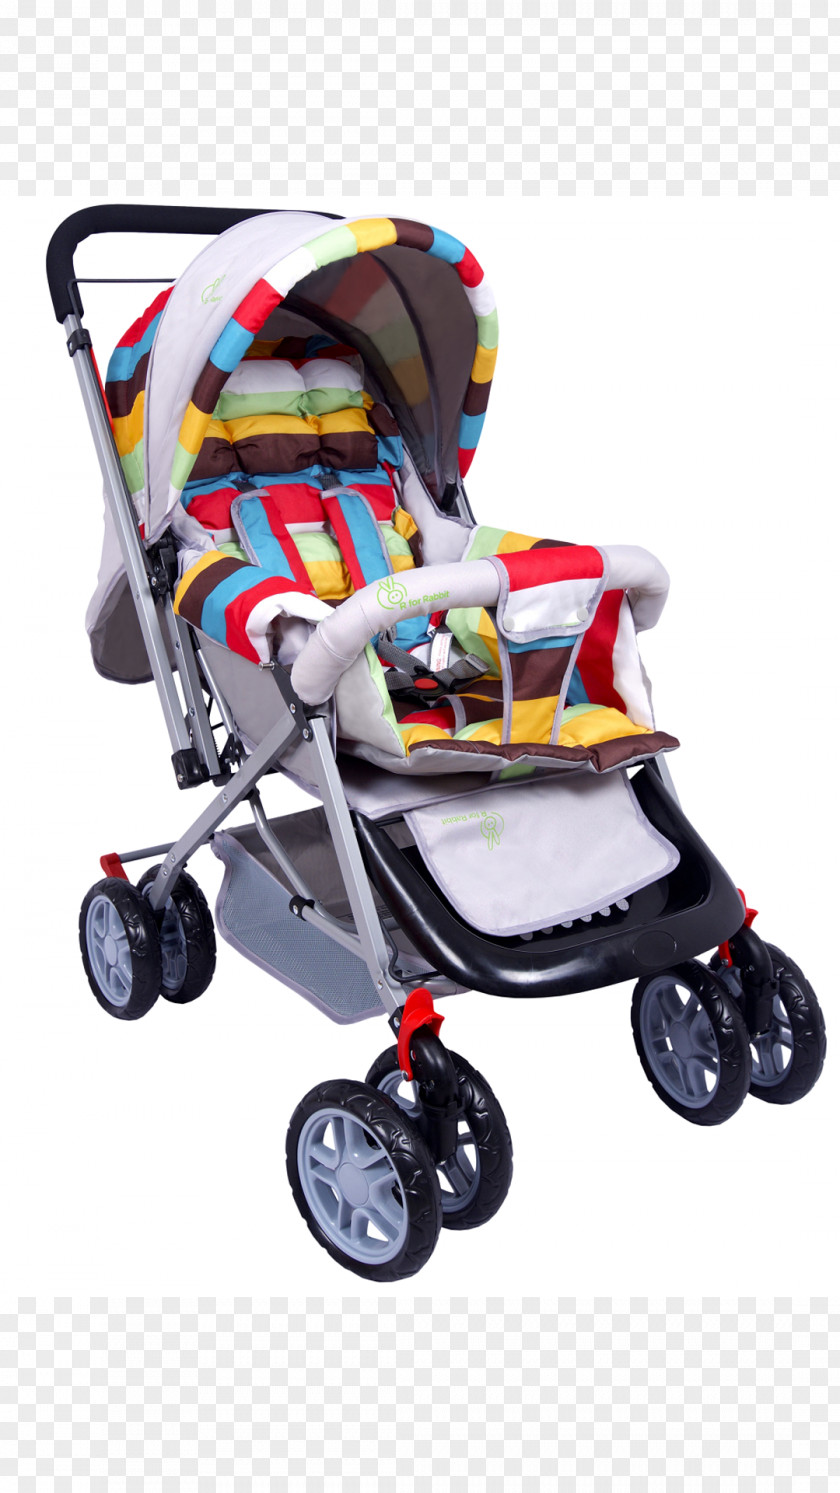 Pram Baby Transport Infant Walker Child R For Rabbit Products Pvt. Ltd. PNG